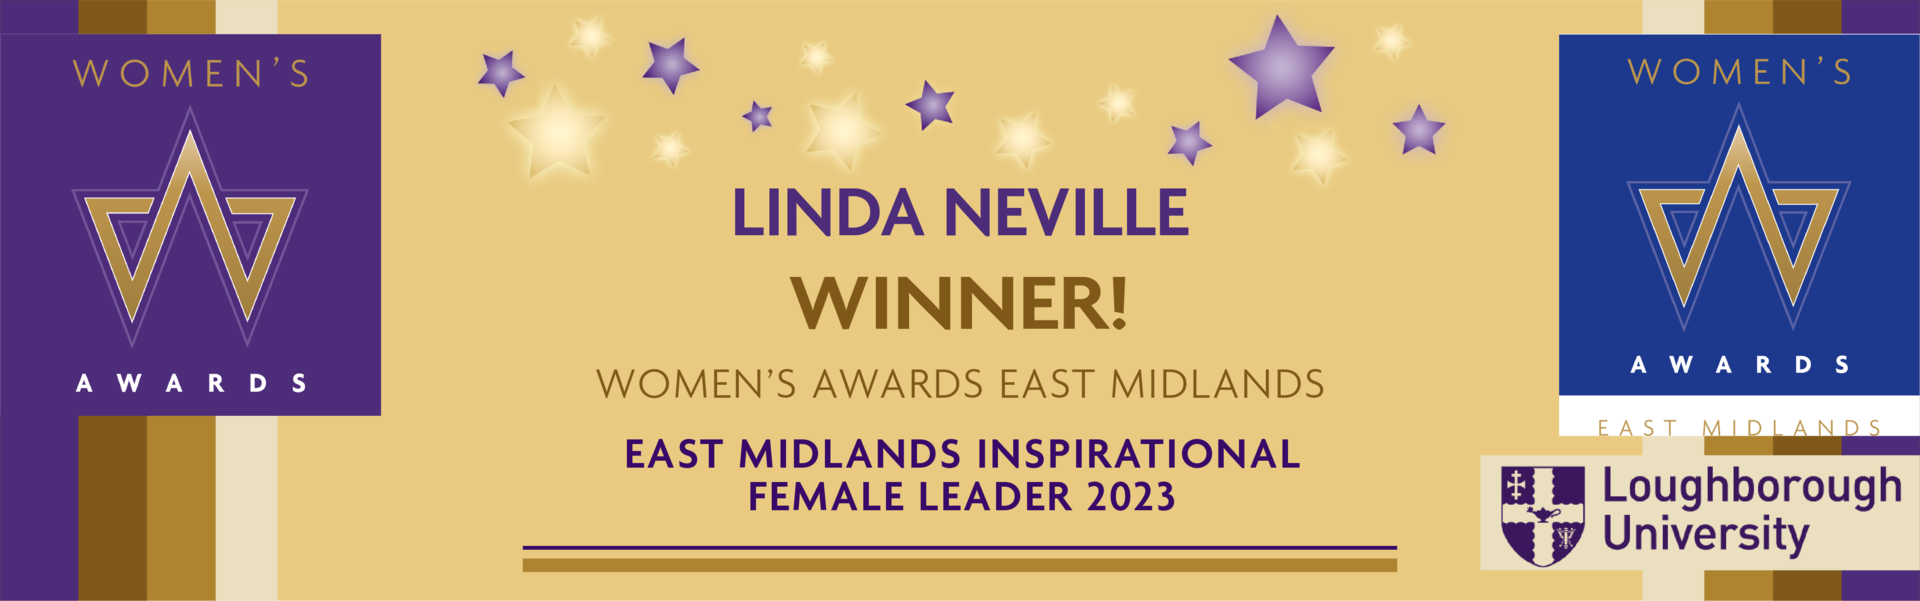 Women's Award's 2023 Inspirational Female Leader Award Winner Banner